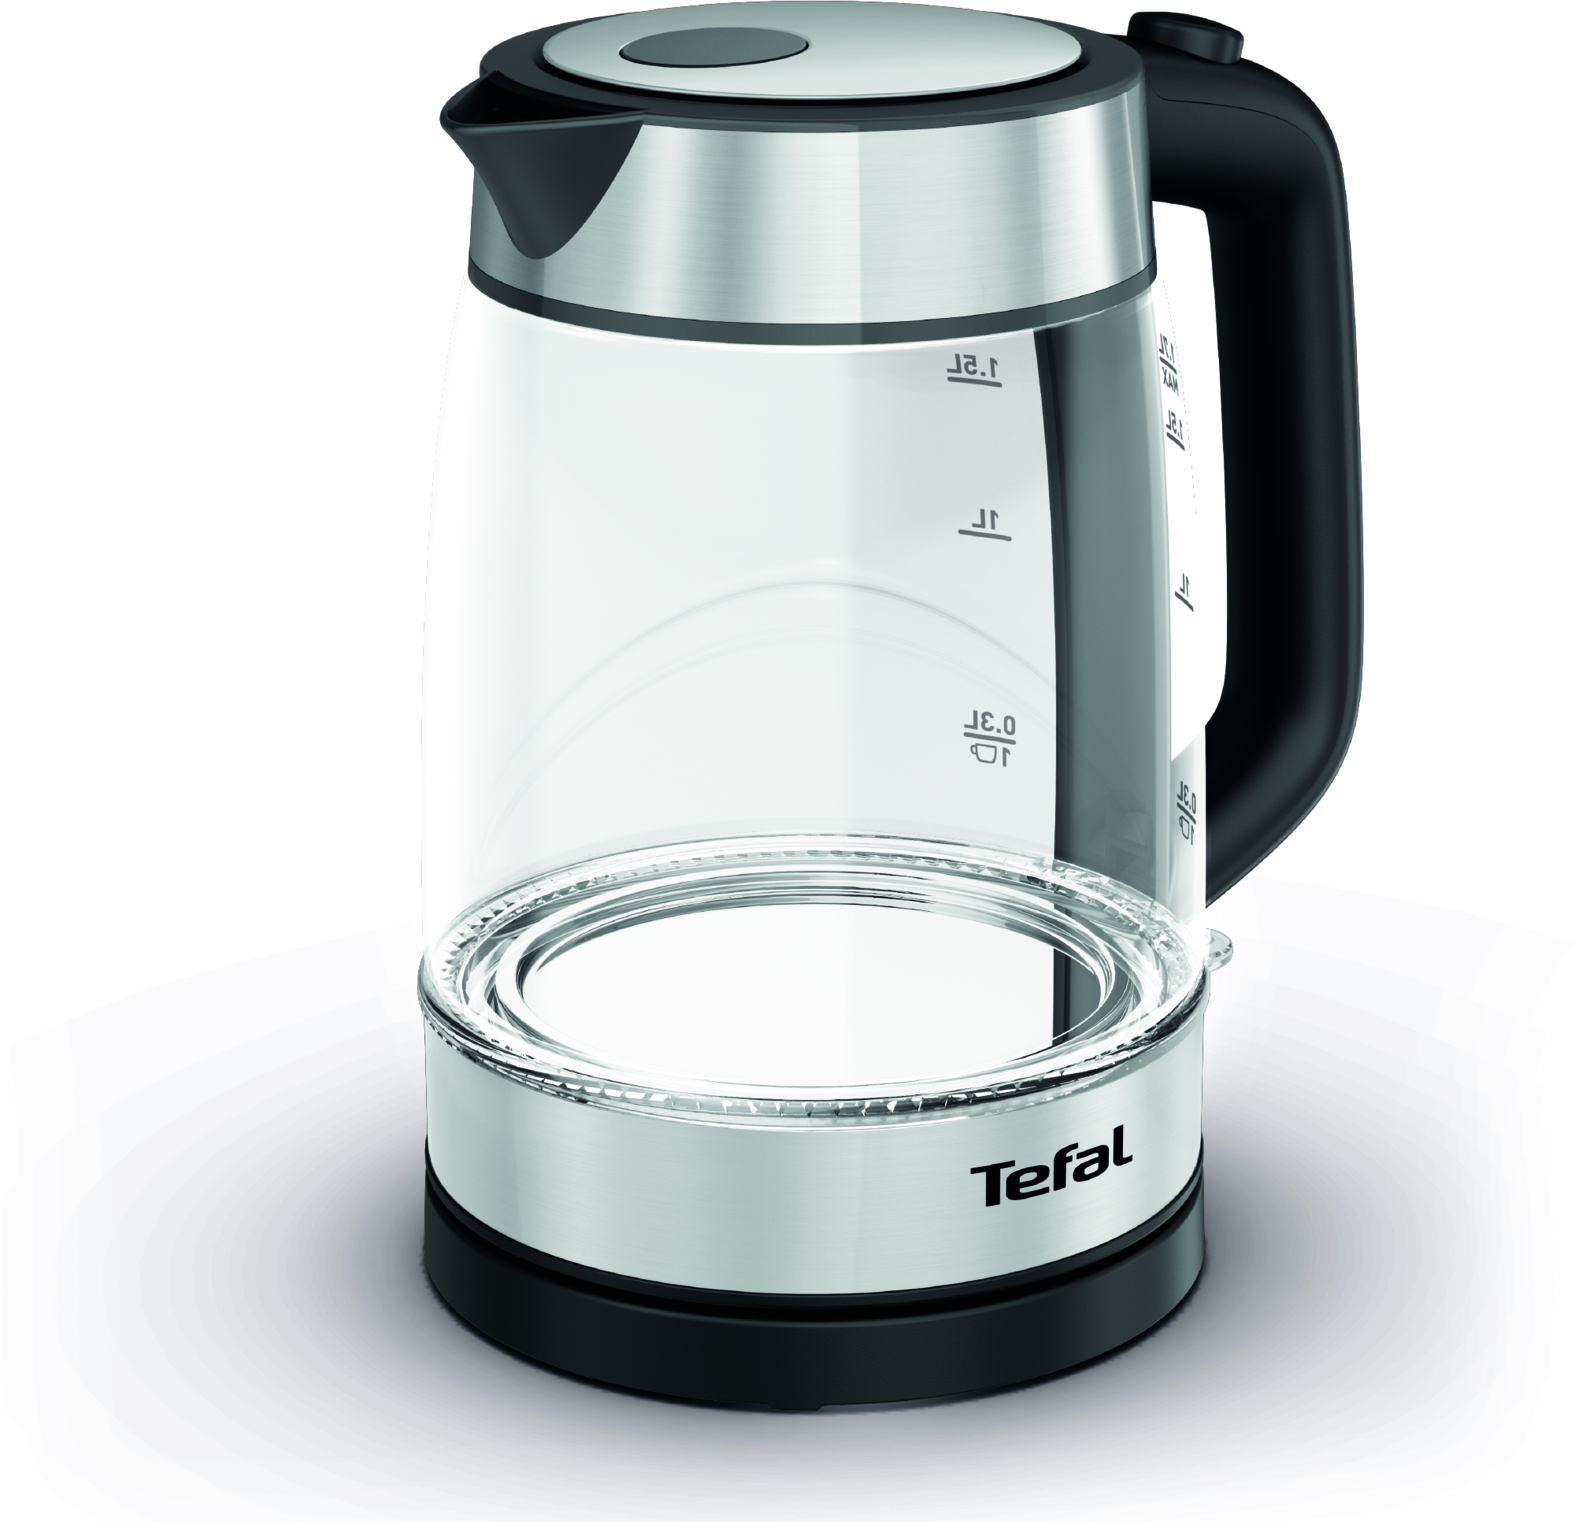 

Чайник электрический Tefal KI700830, 1.7 л, серебристый/черный, Прозрачный;серебристый;черный, KI700830